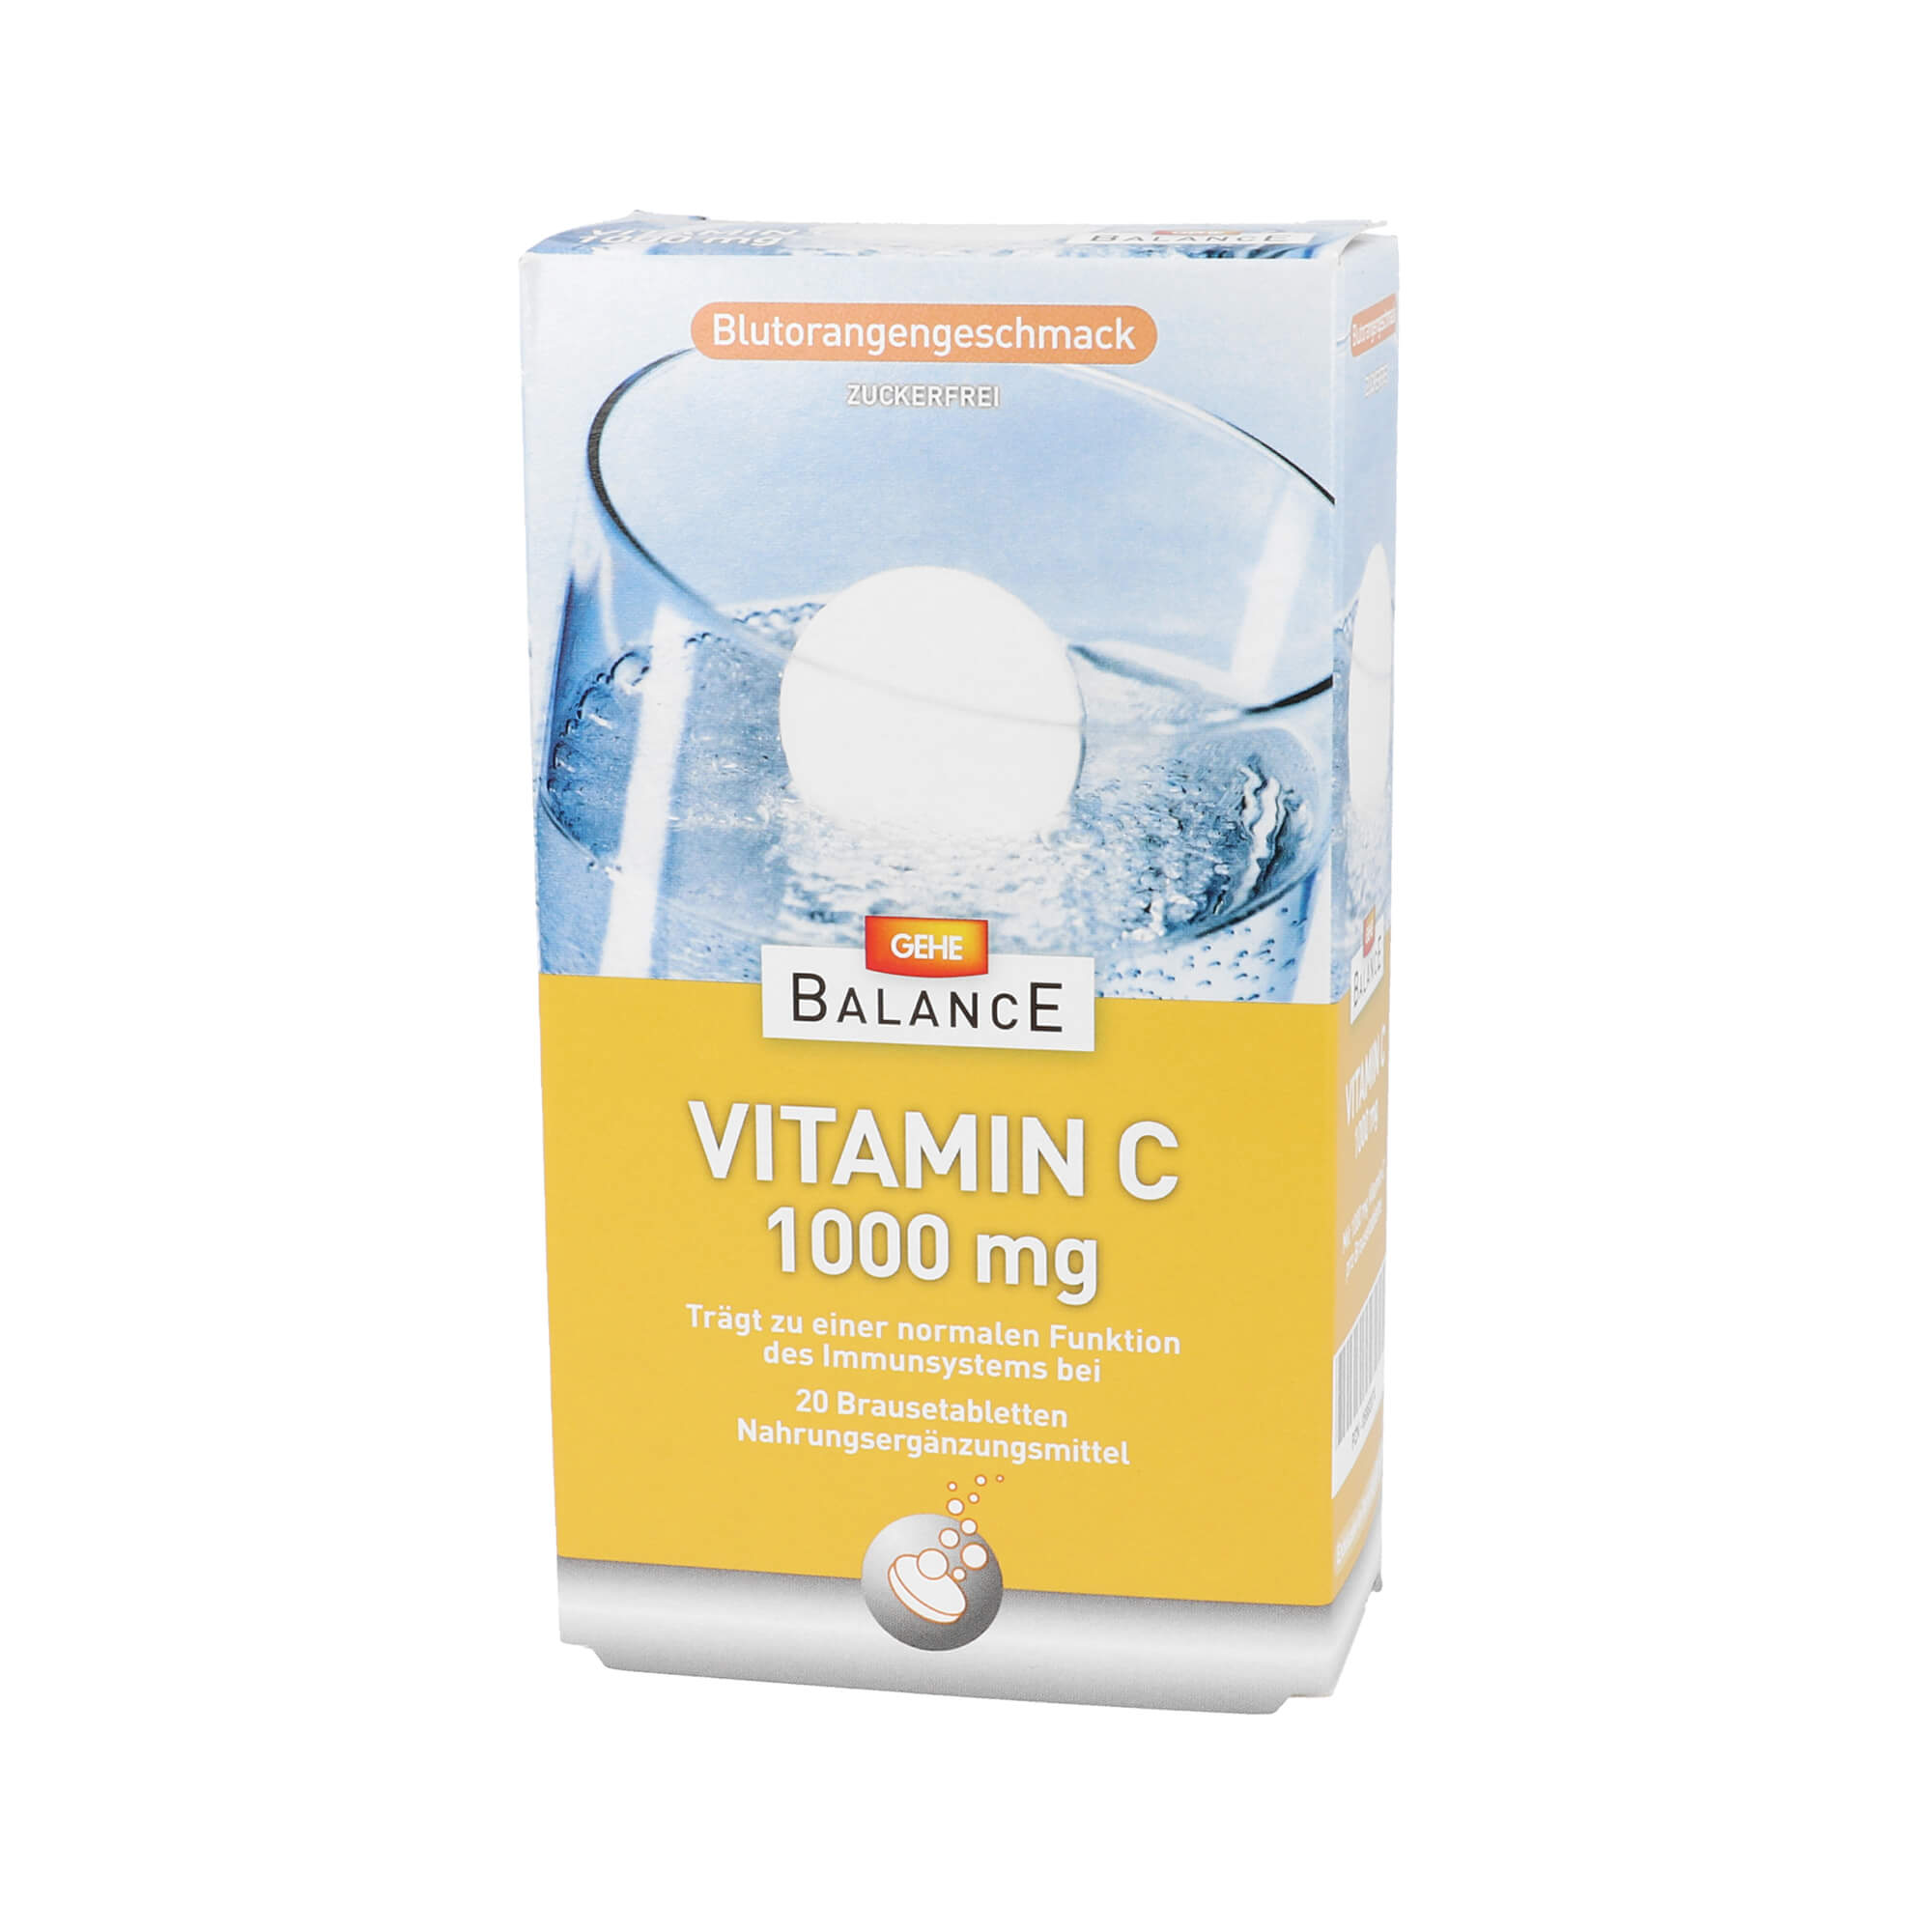 Nahrungsergänzungsmittel mit Vitamin C. Mit Blutorangengeschmack.